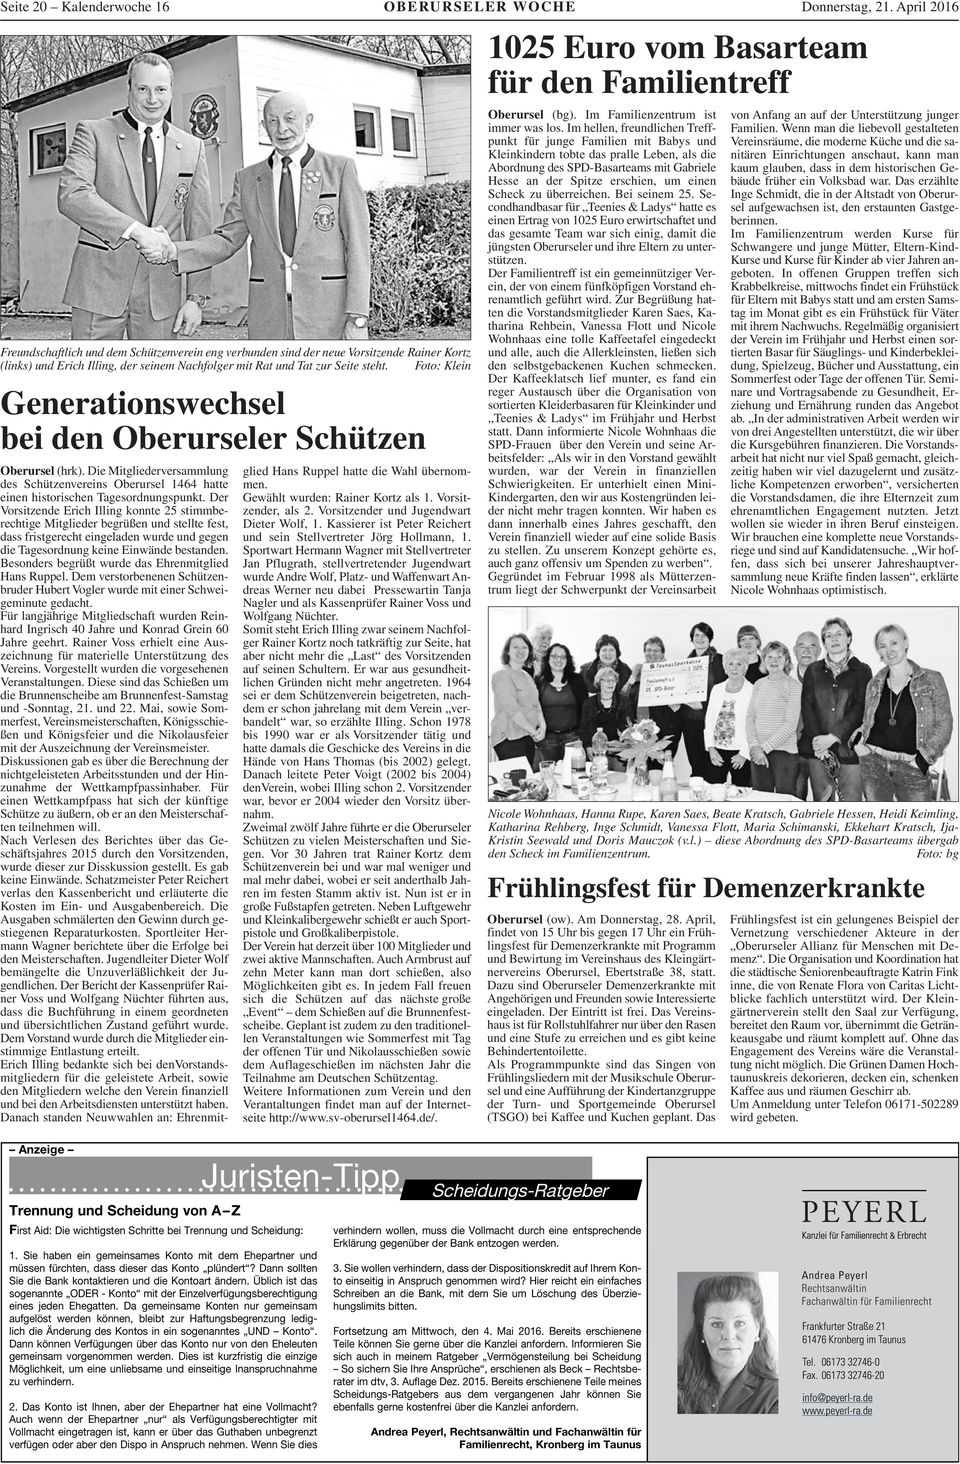 Foto: Klein Generationswechsel bei den Oberurseler Schützen Oberursel (hrk). Die Mitgliederversammlung des Schützenvereins Oberursel hatte einen historischen Tagesordnungspunkt.